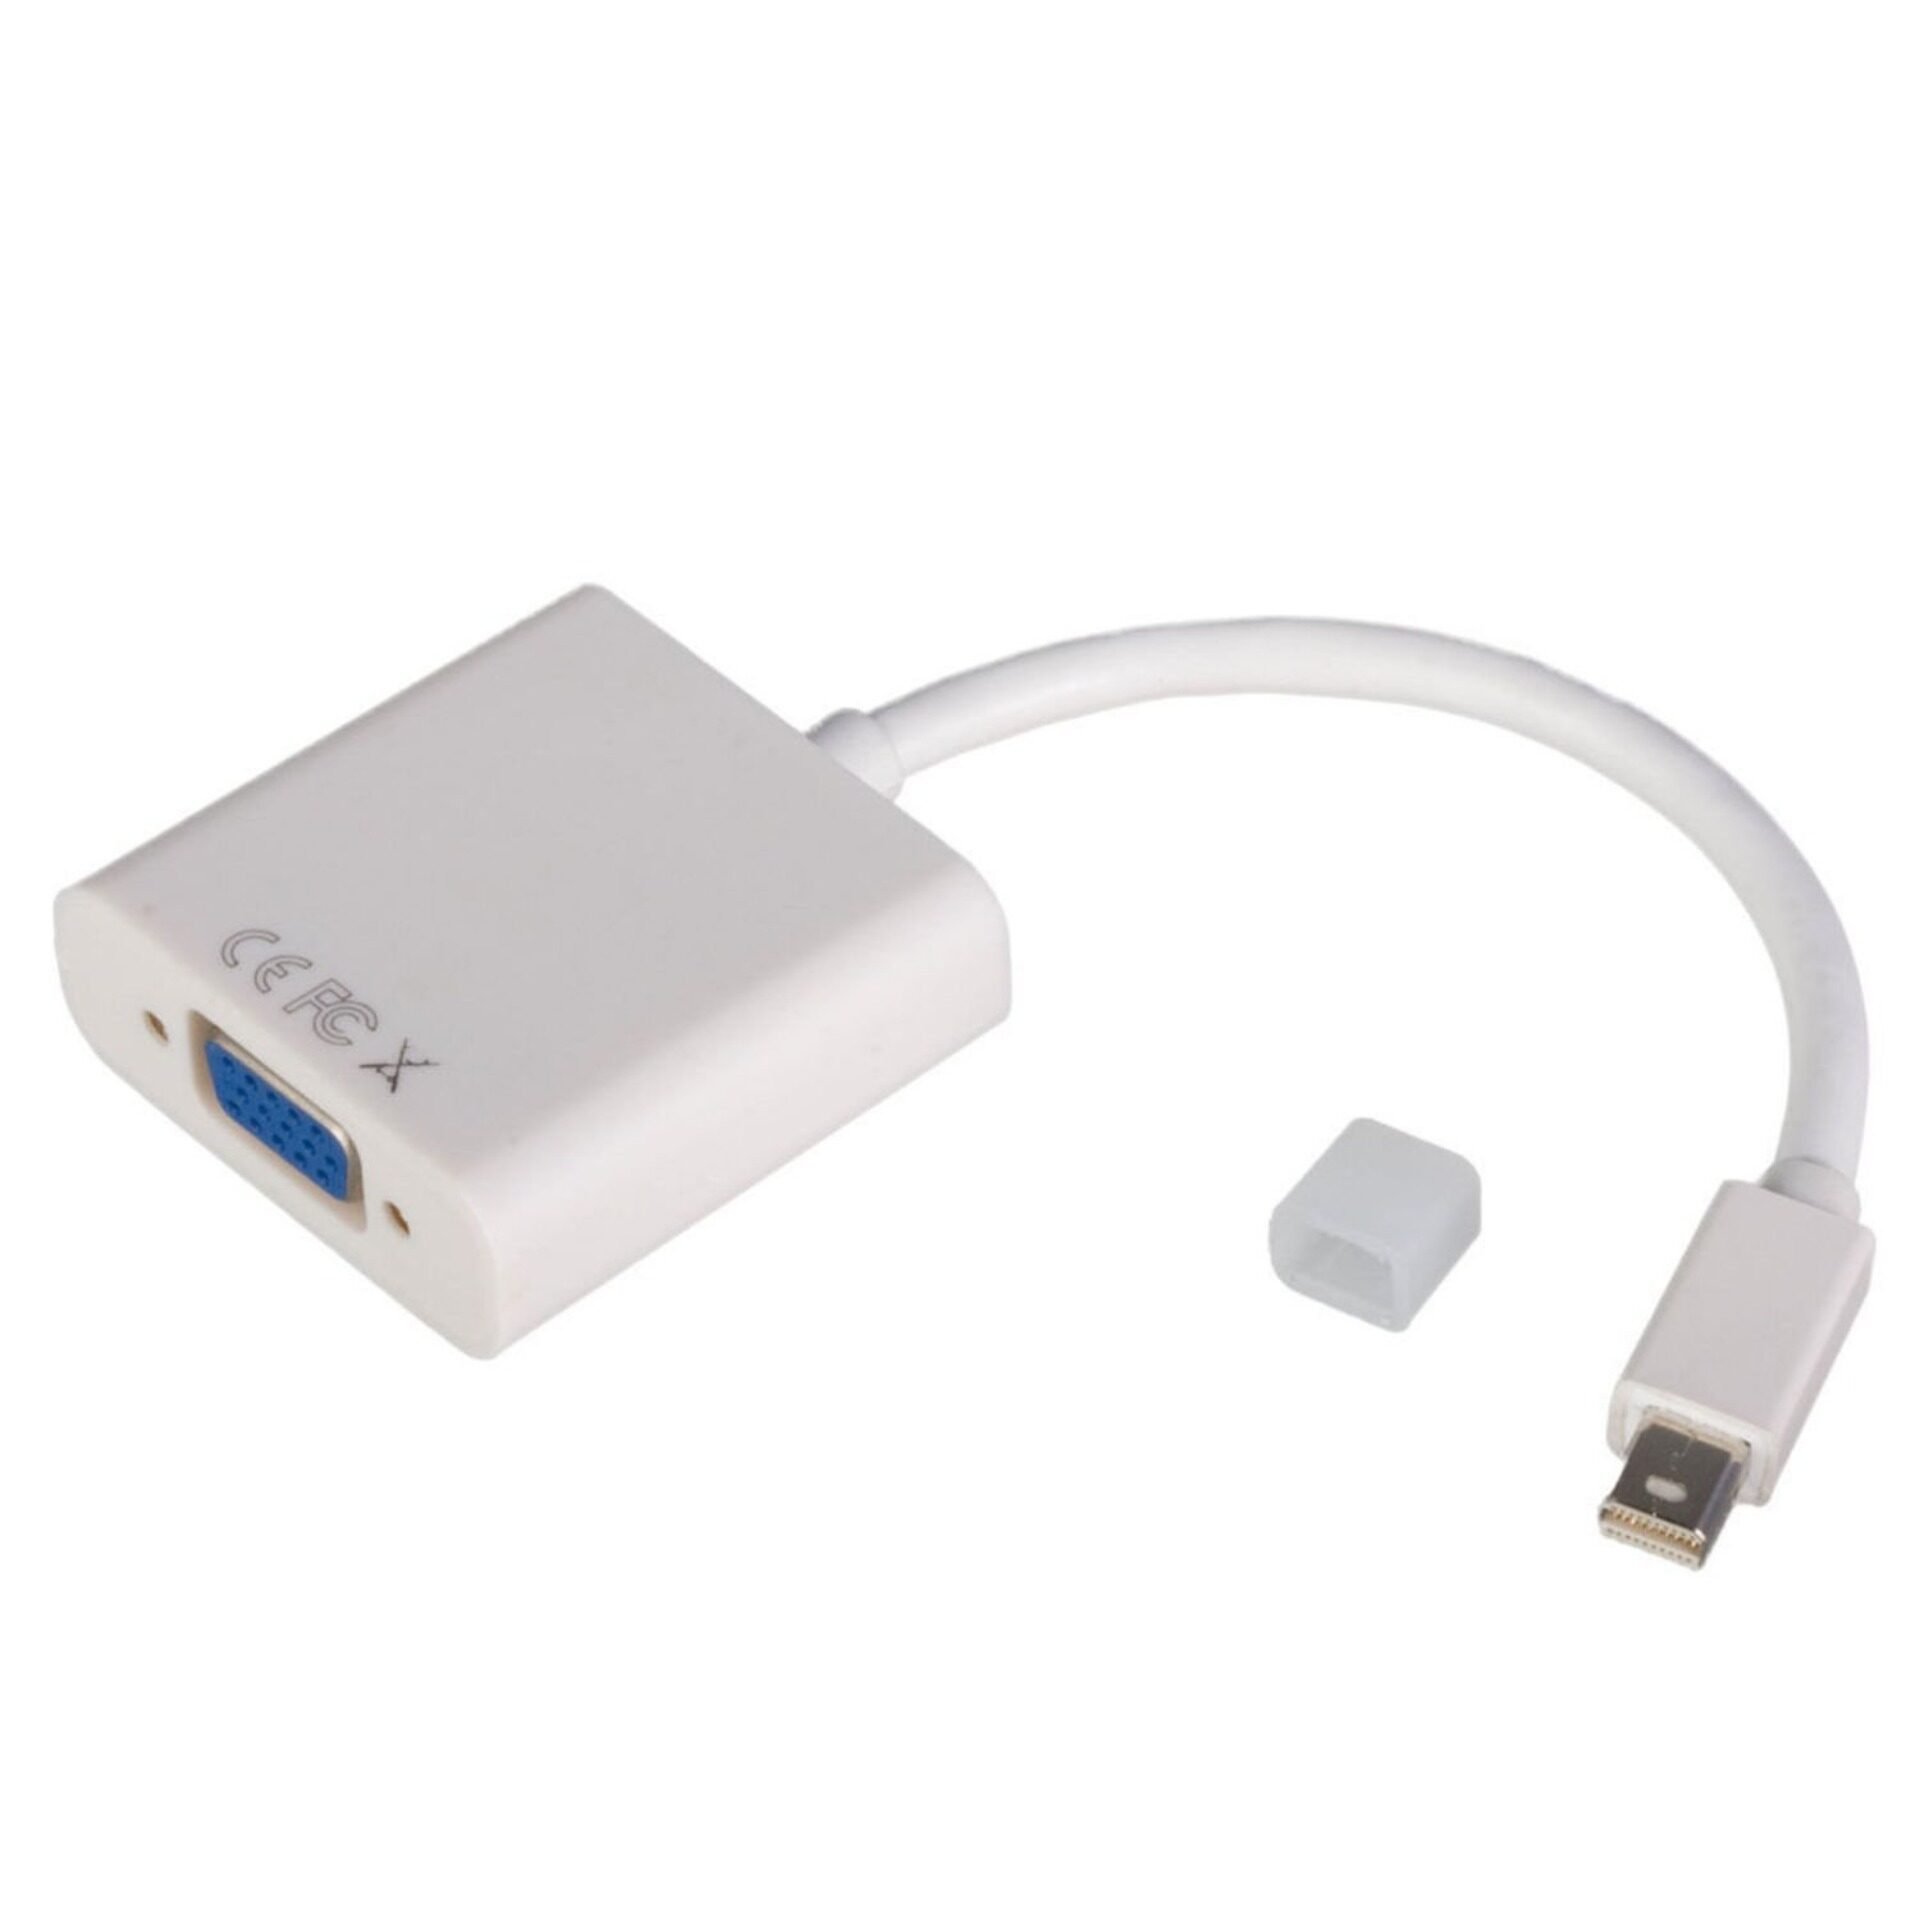 สายMiniDP Mini Thunderbolt Mini Display Port To VGA สำหรับ MacBook/Pro/Air/iMac และ Microsoft Surface (White)